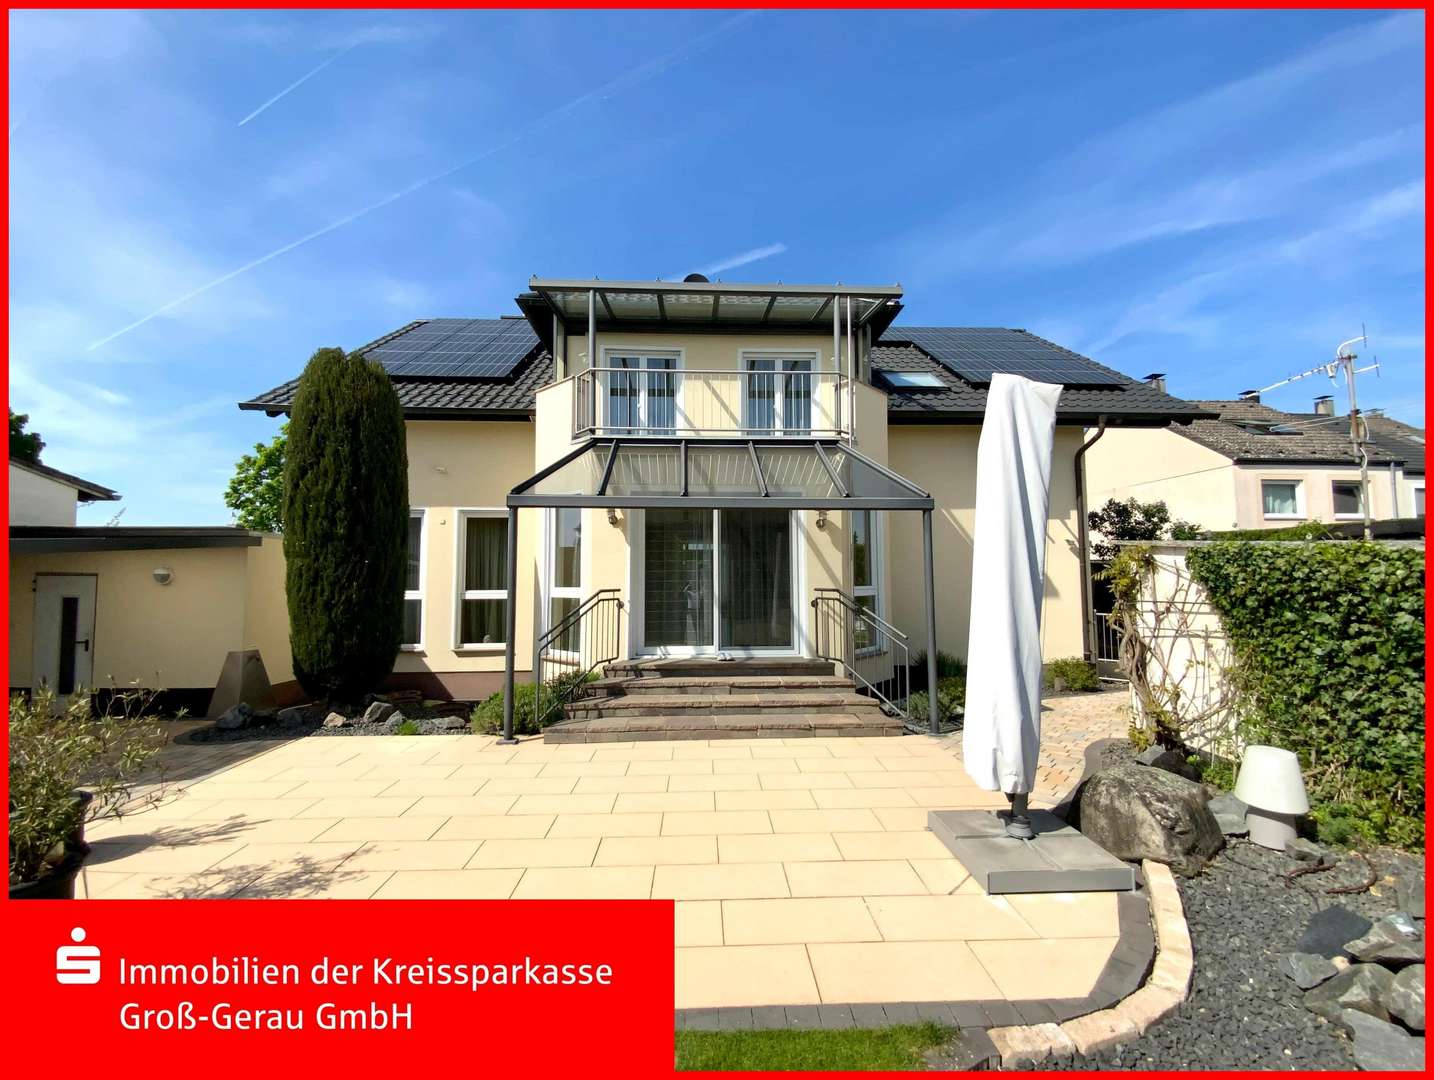 Terrasse - Villa in 64546 Mörfelden-Walldorf mit 333m² kaufen